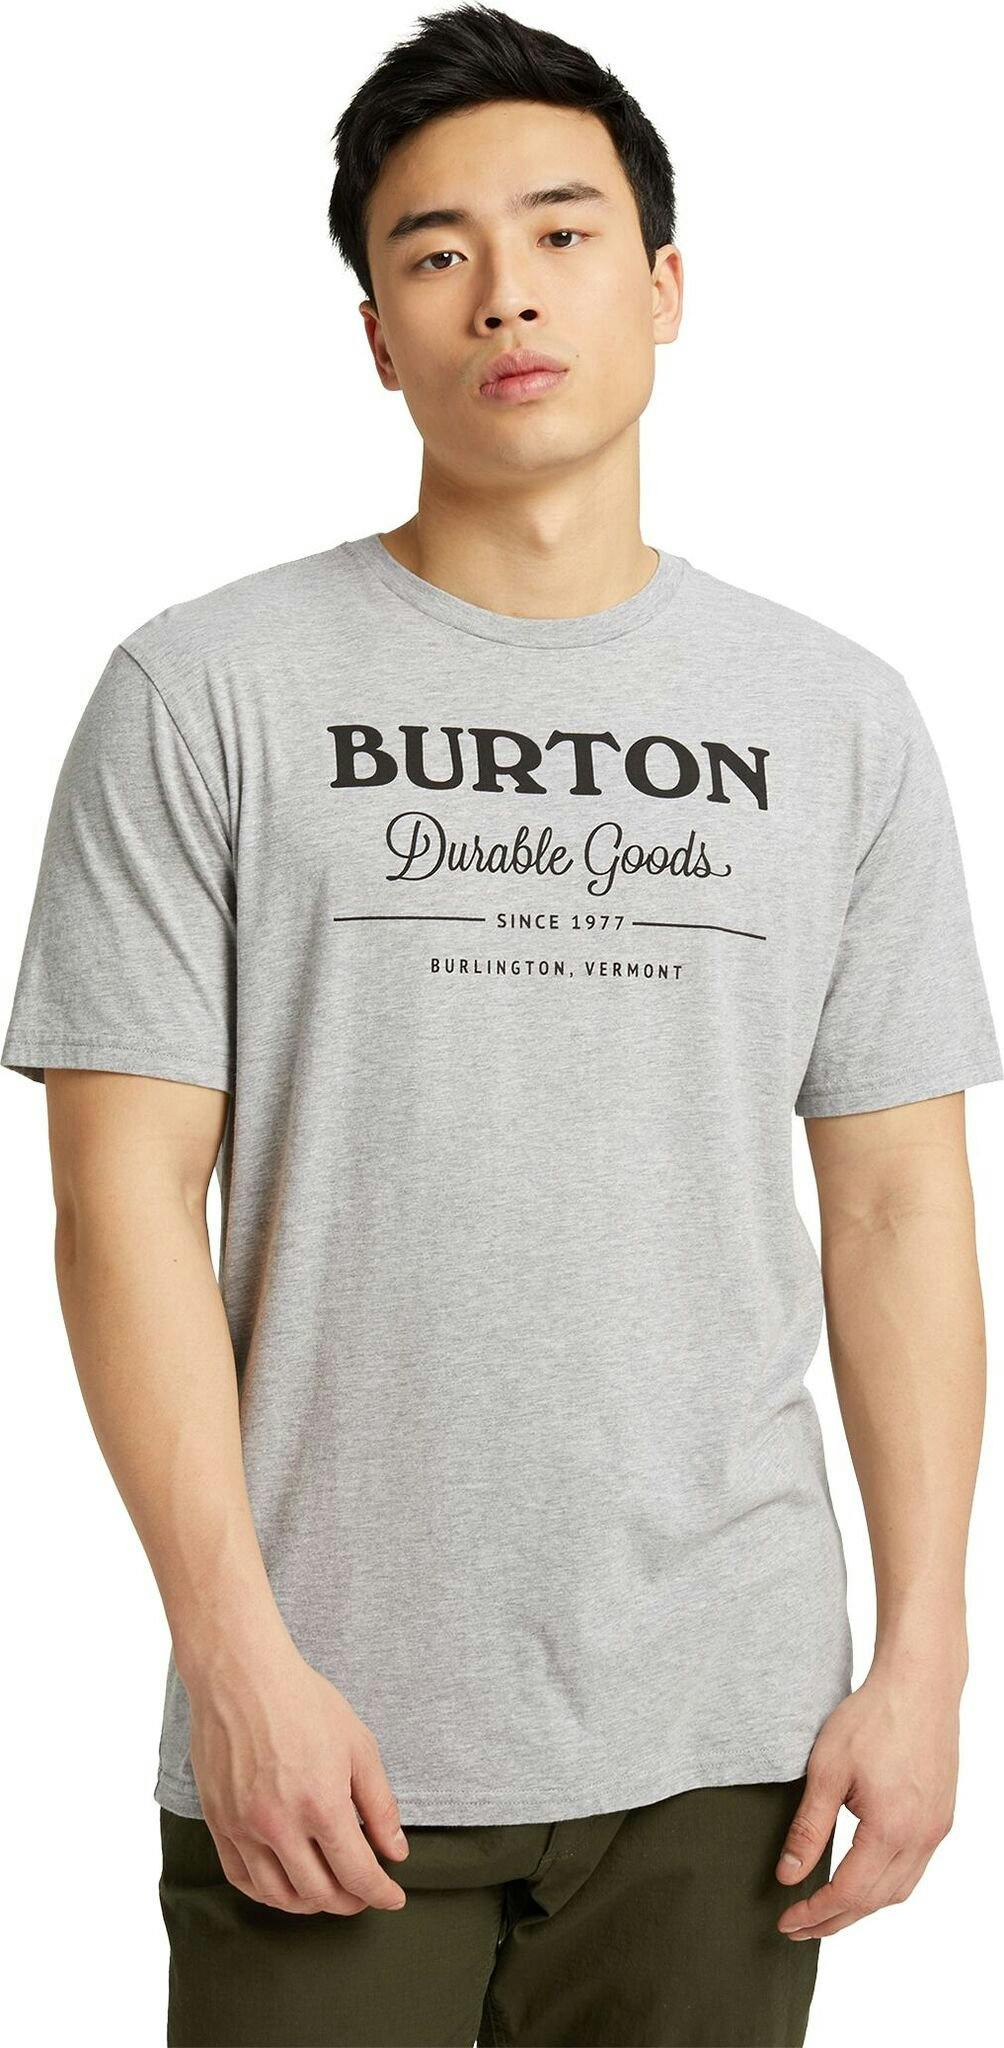 Image de produit pour T-shirt à manches courtes Durable Goods - Unisexe